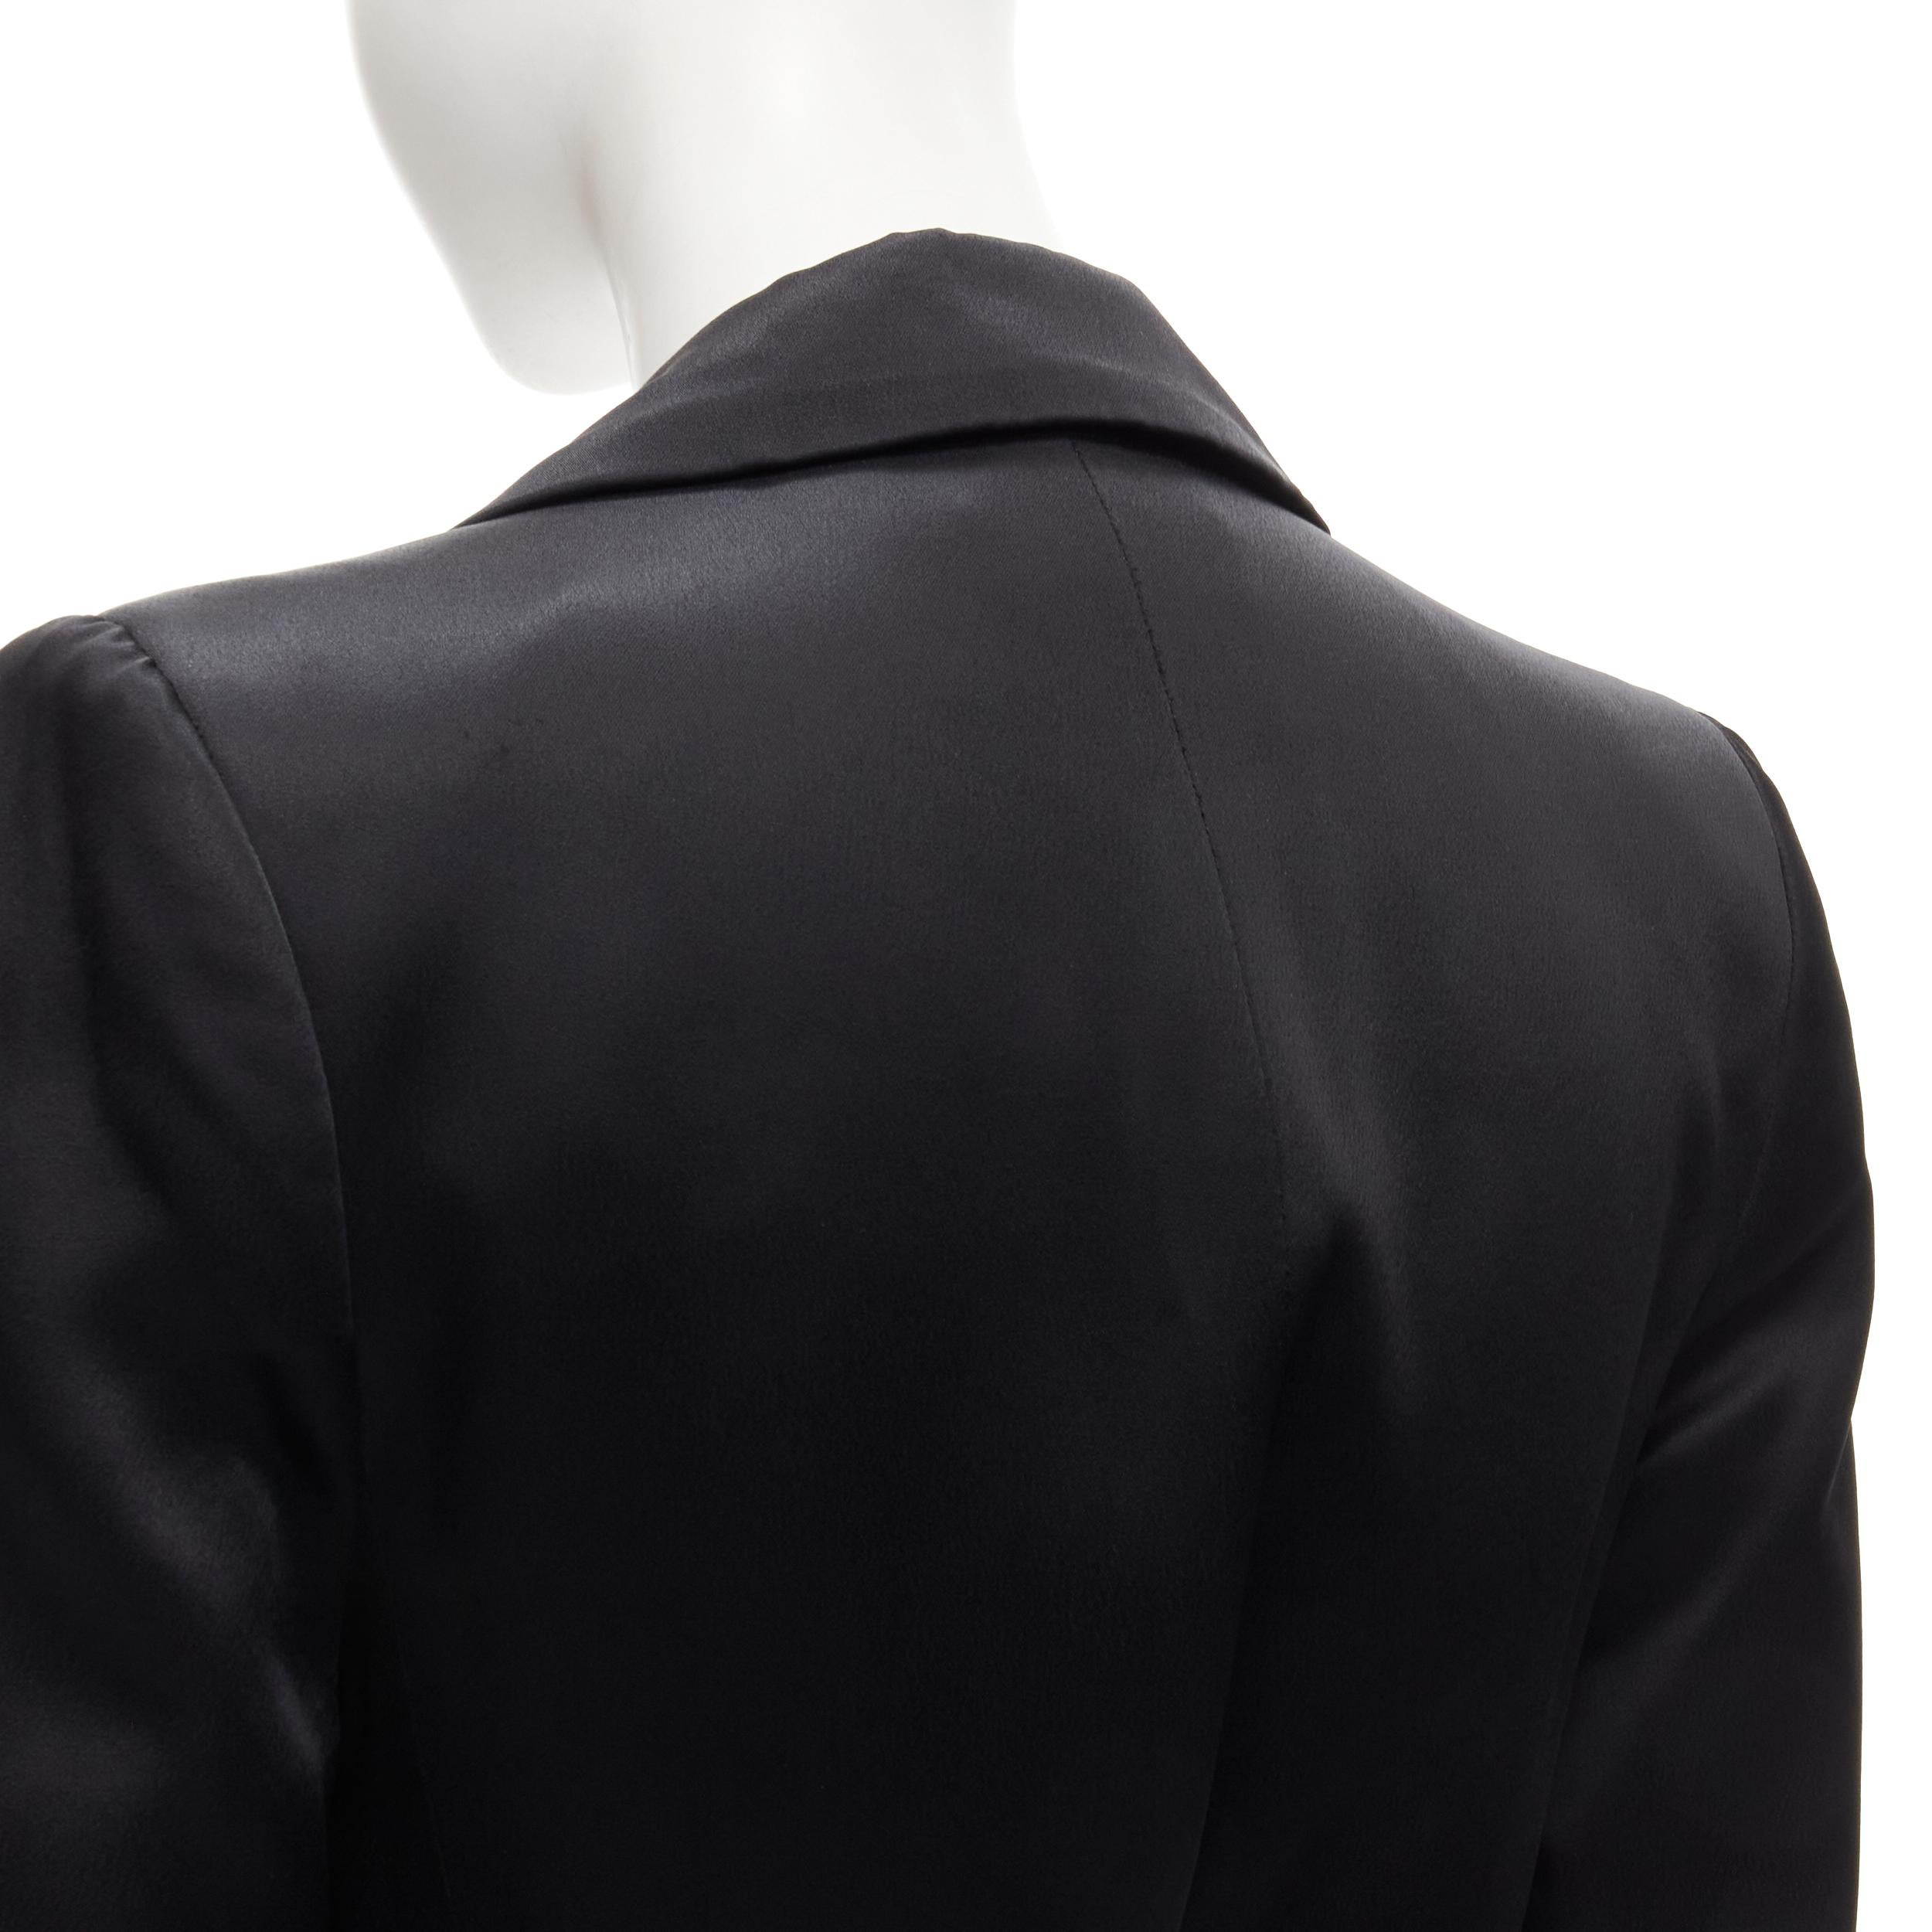 MATICEVSKI 2019 Firmament black slit sleeve plunge belted blazer vest AUS8 M 4